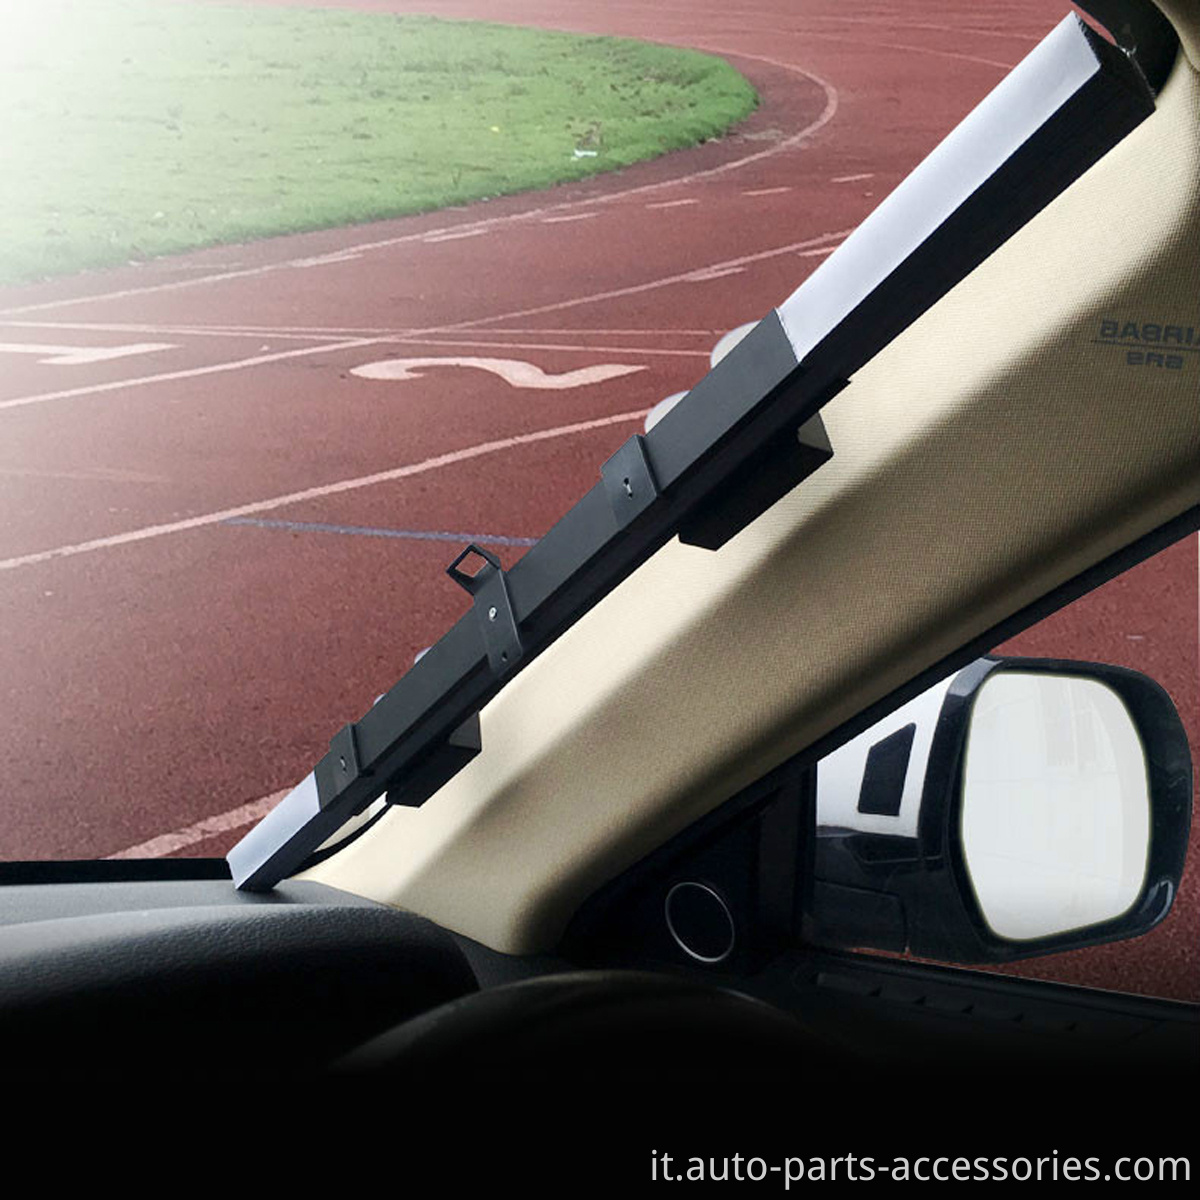 Protezione a calore automatico anteriore universale Verduttura del parabrezza Verdure Ompi per i finestrini per auto